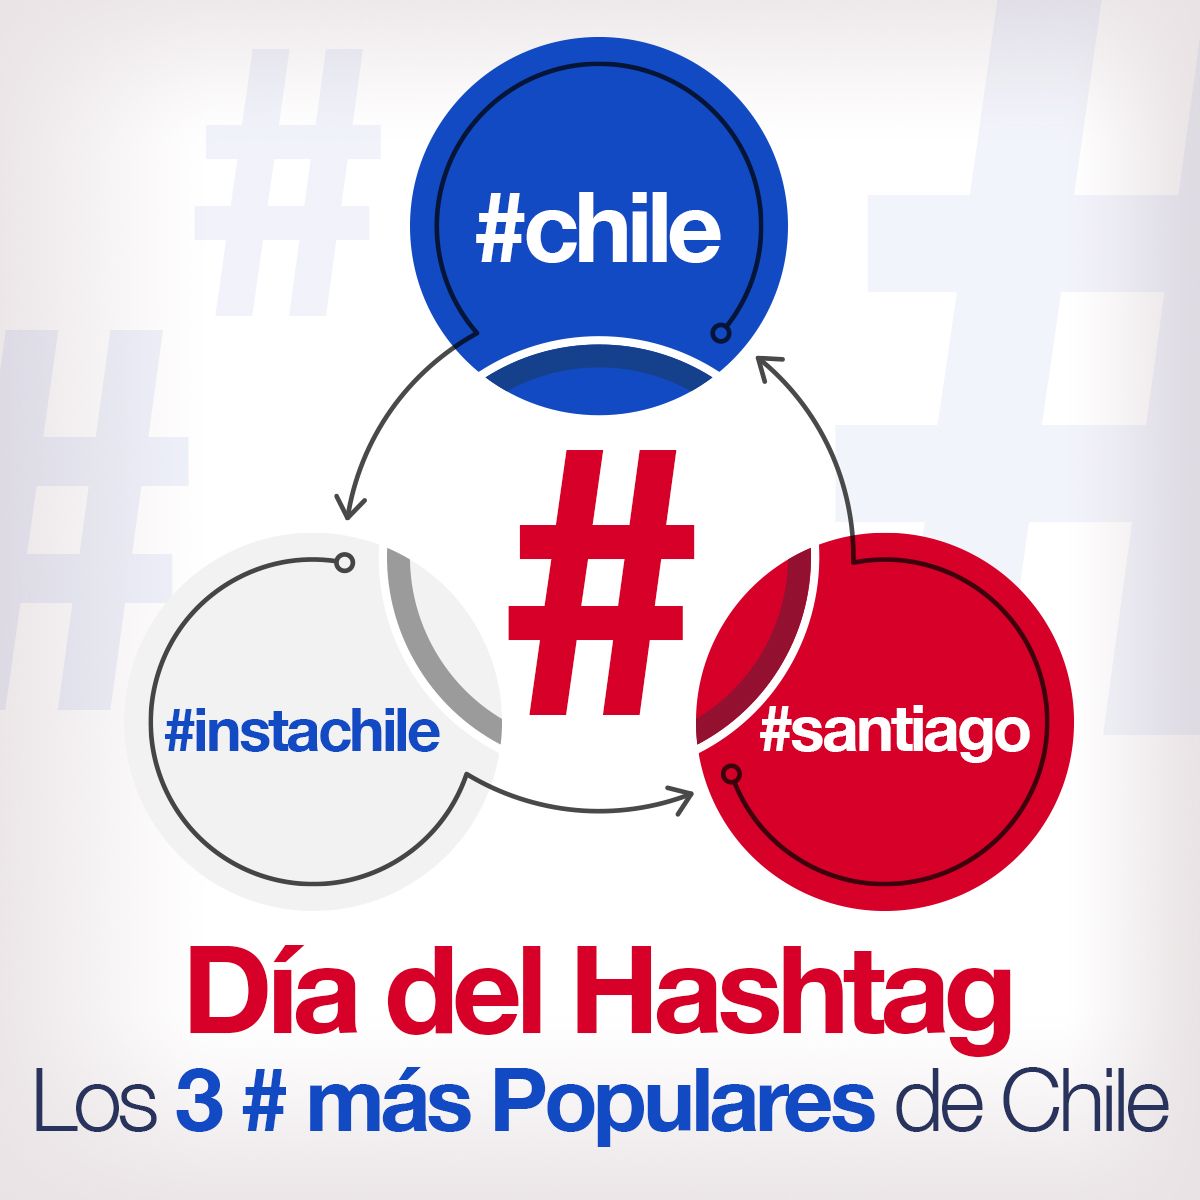 Día del Hashtag Los 3 # más Populares de Chile